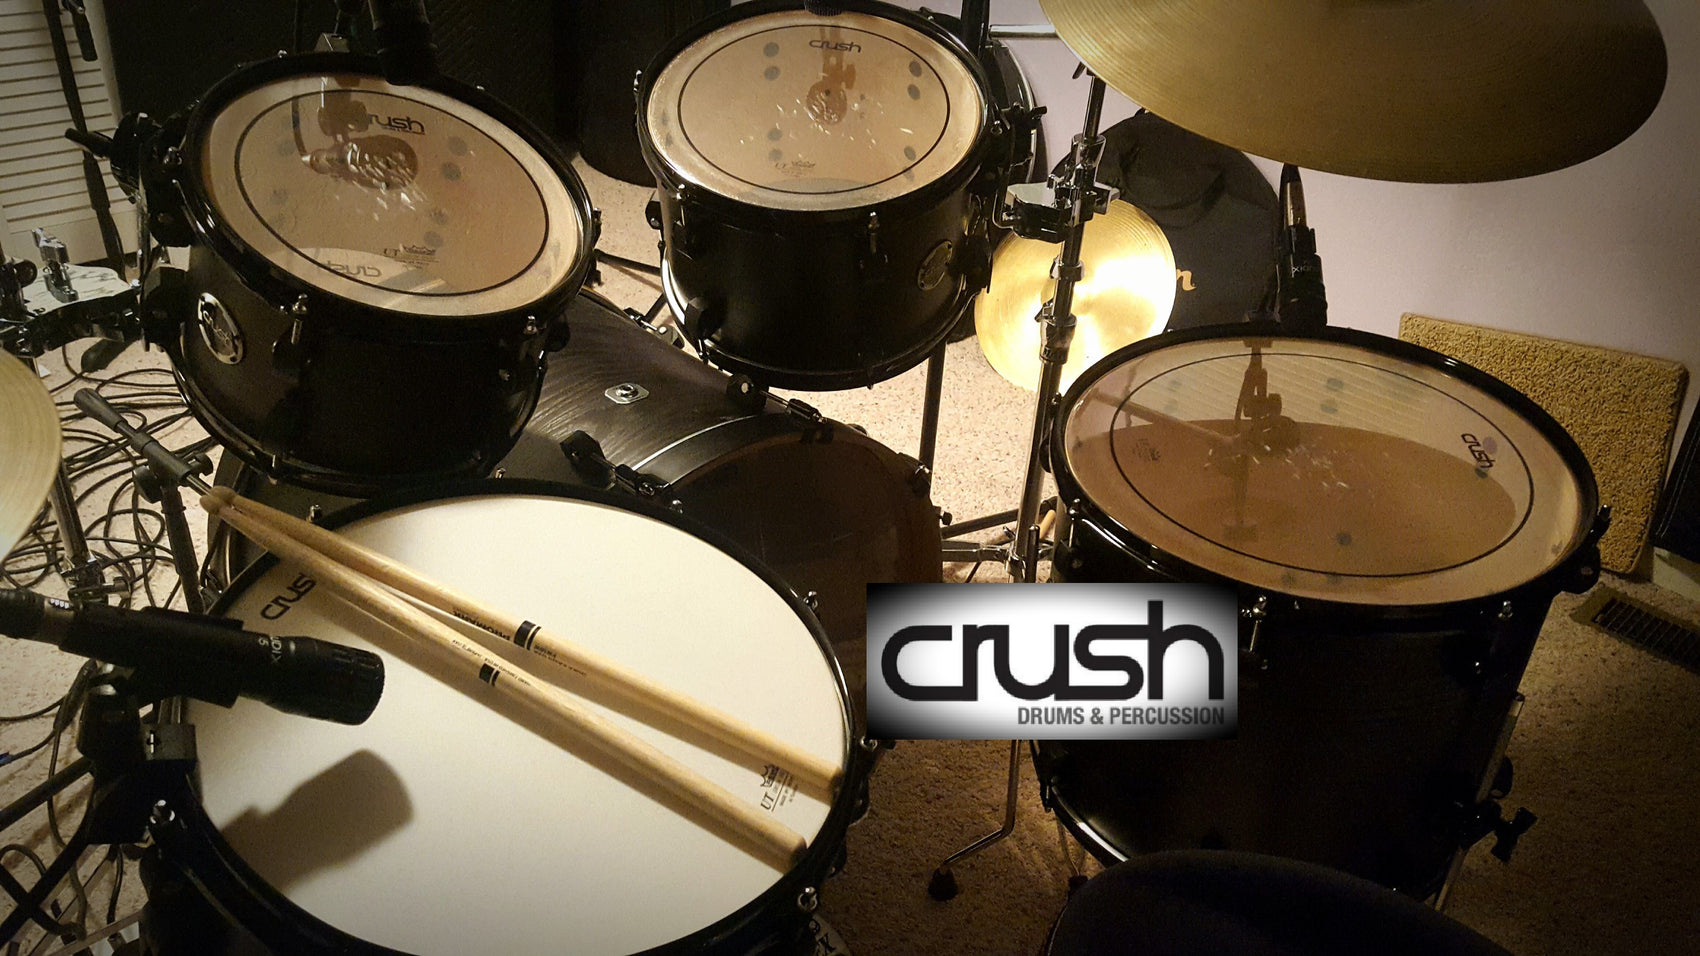 Drum Kit Review - Crush Chameleon Ash - Free Drum Samples Inside!